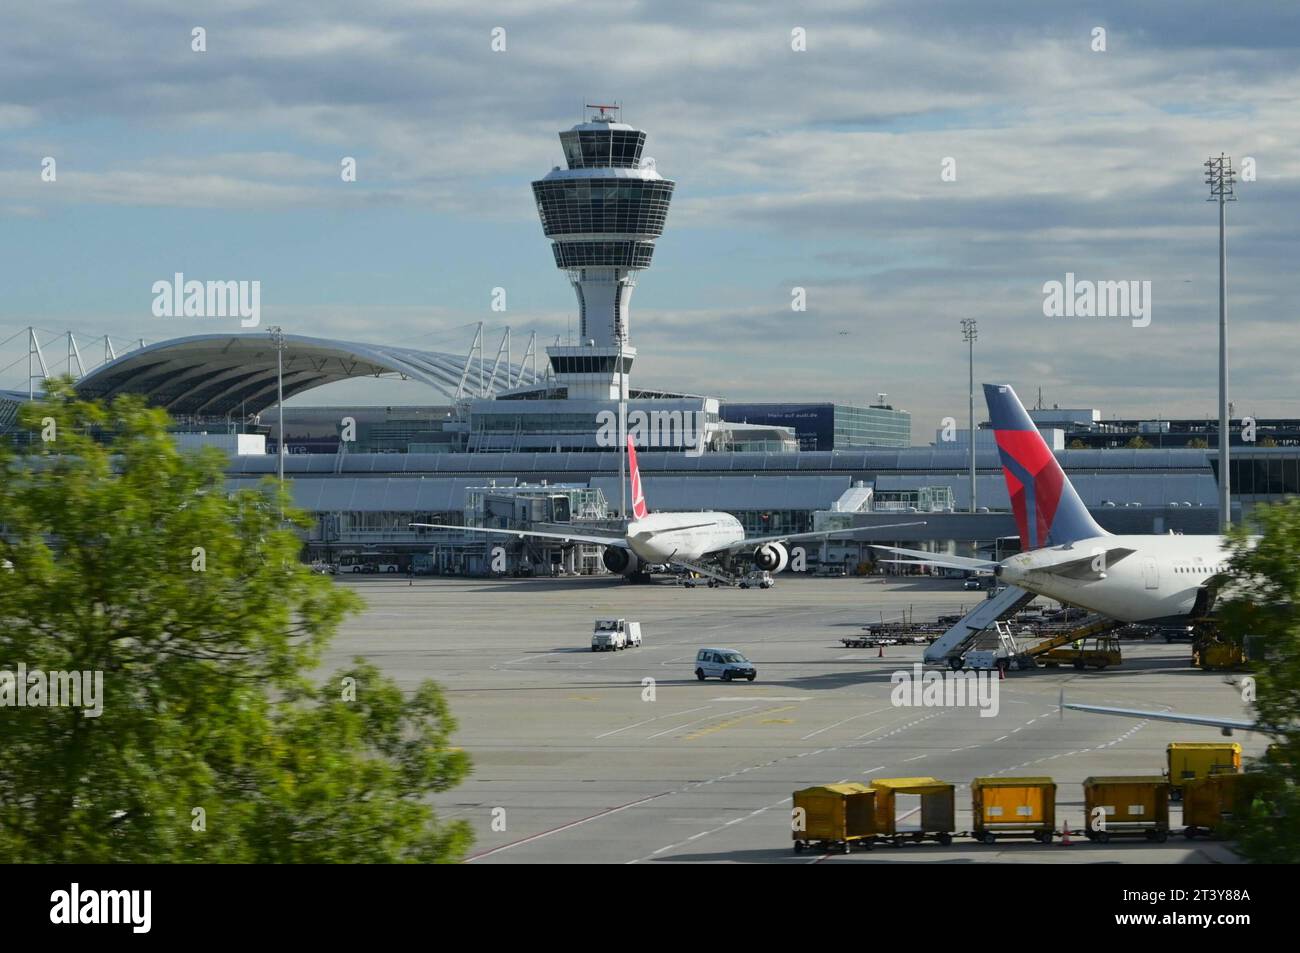 München Flughafen, Vorfeld und Tower, Terminal 1 *** Munich Airport, apron and tower, Terminal 1 Credit: Imago/Alamy Live News Stock Photo